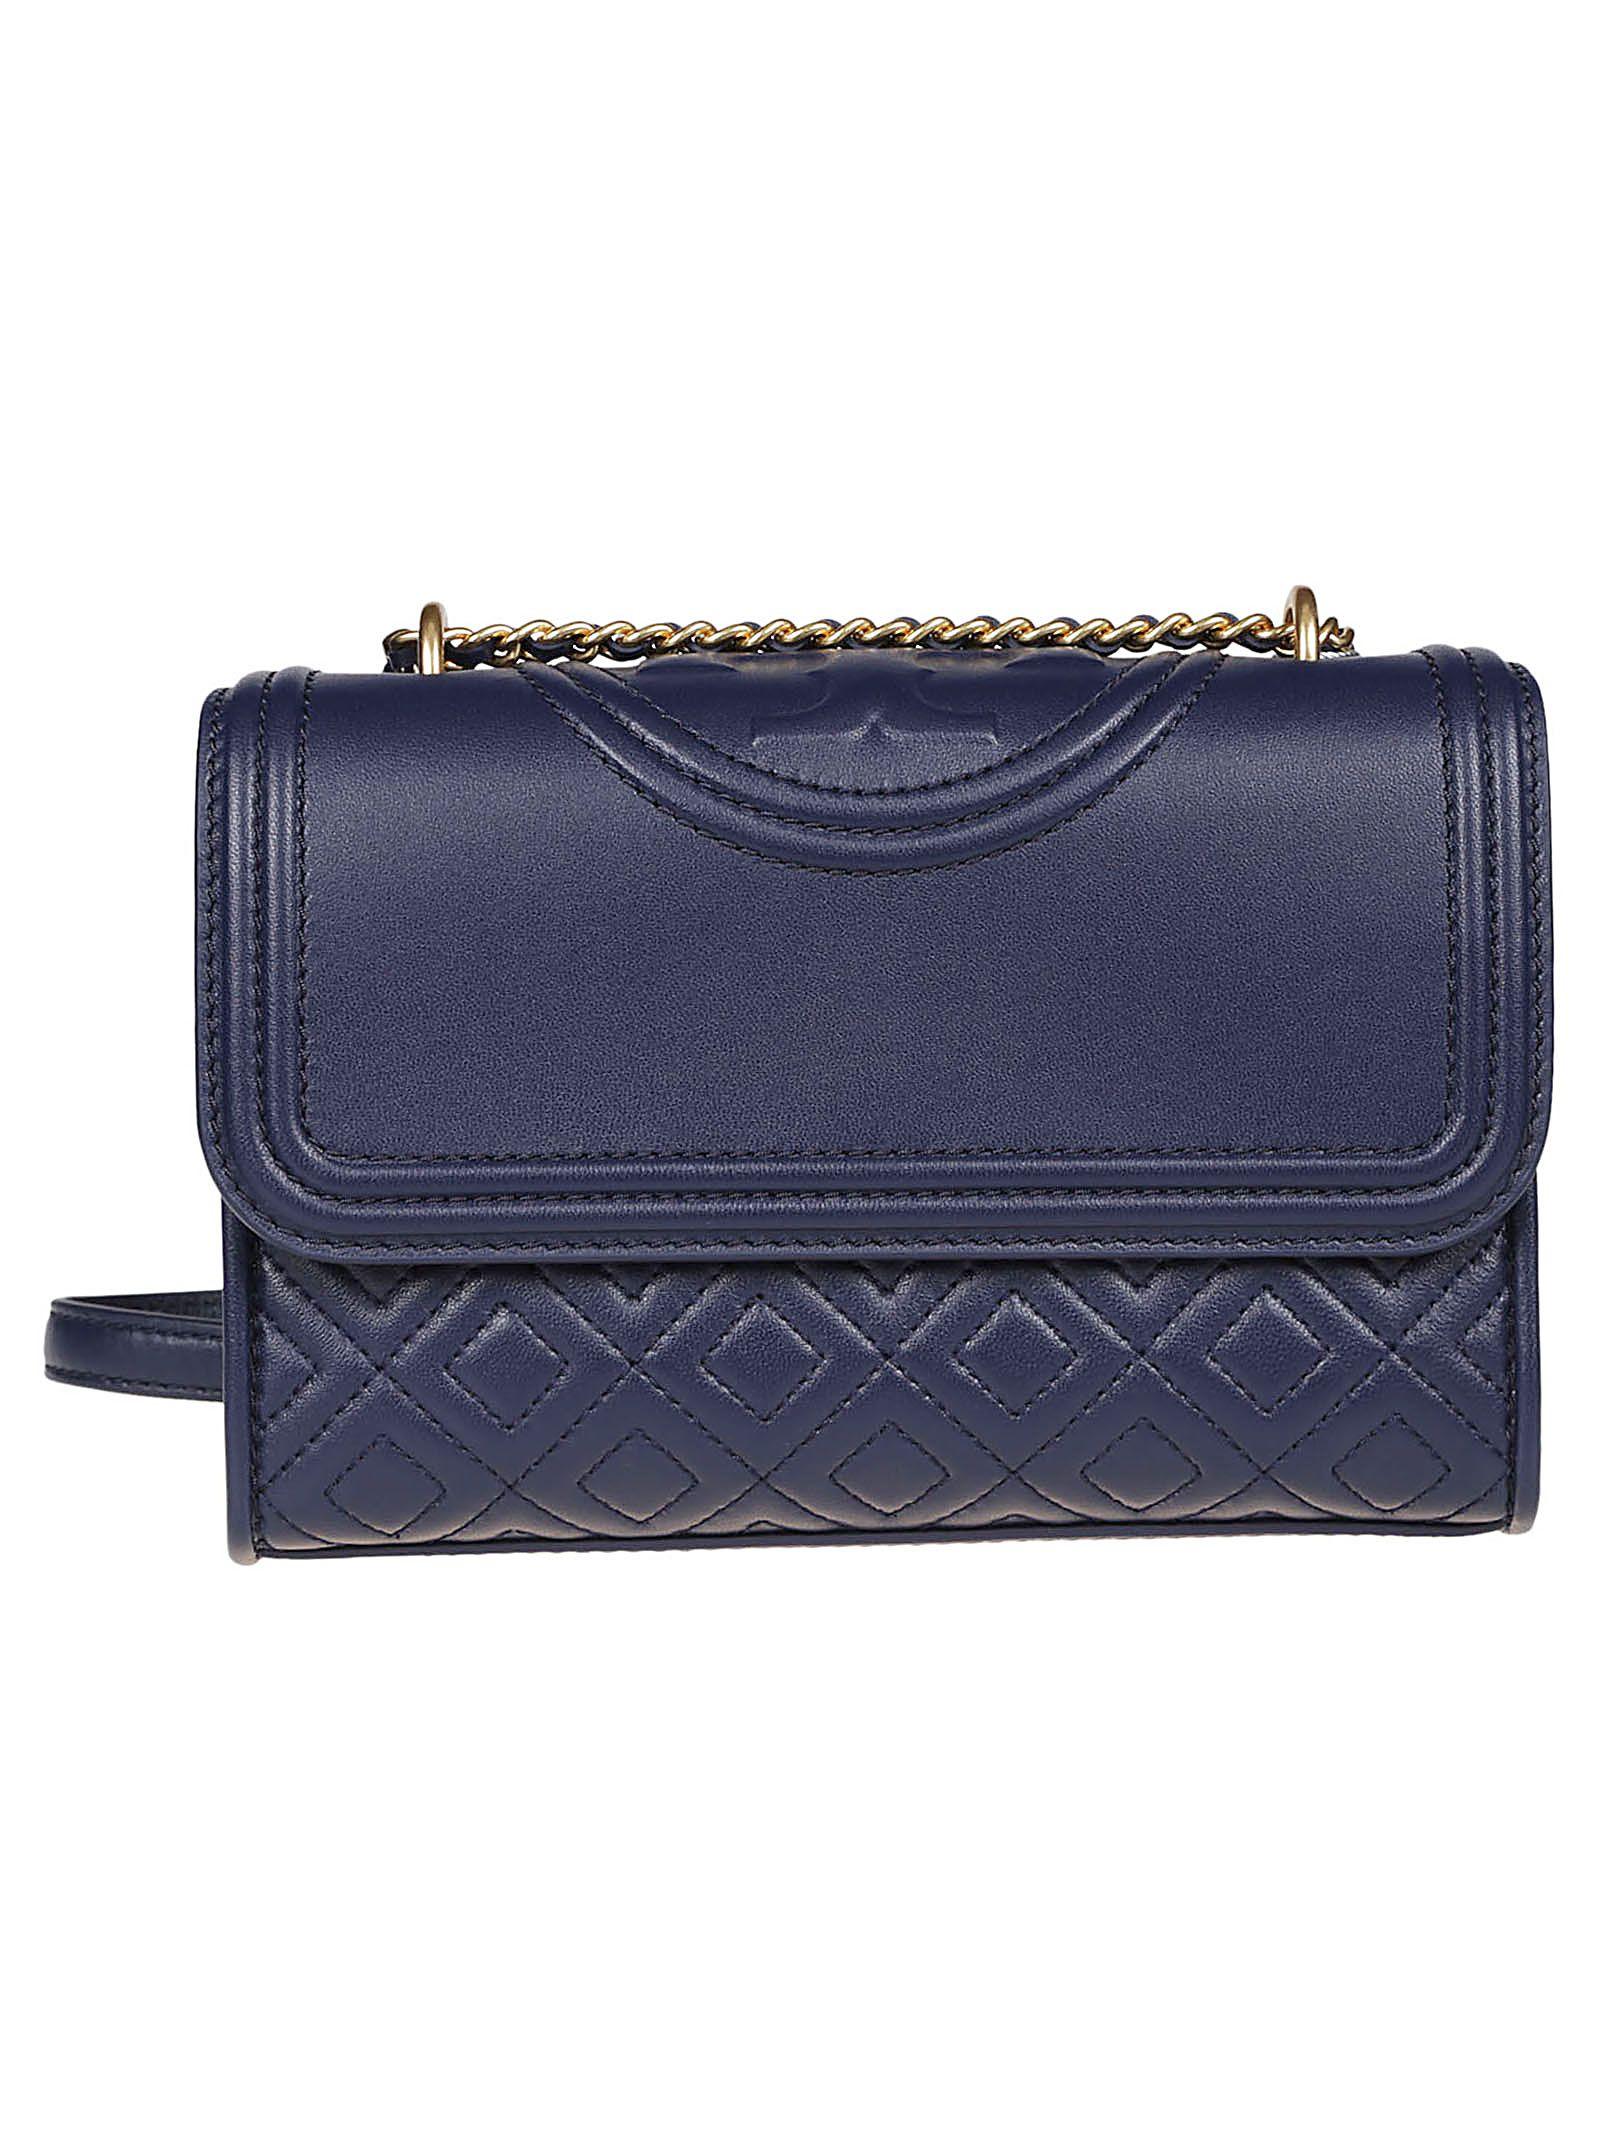 Tory Burch Blue Leather Handbag - Lyst